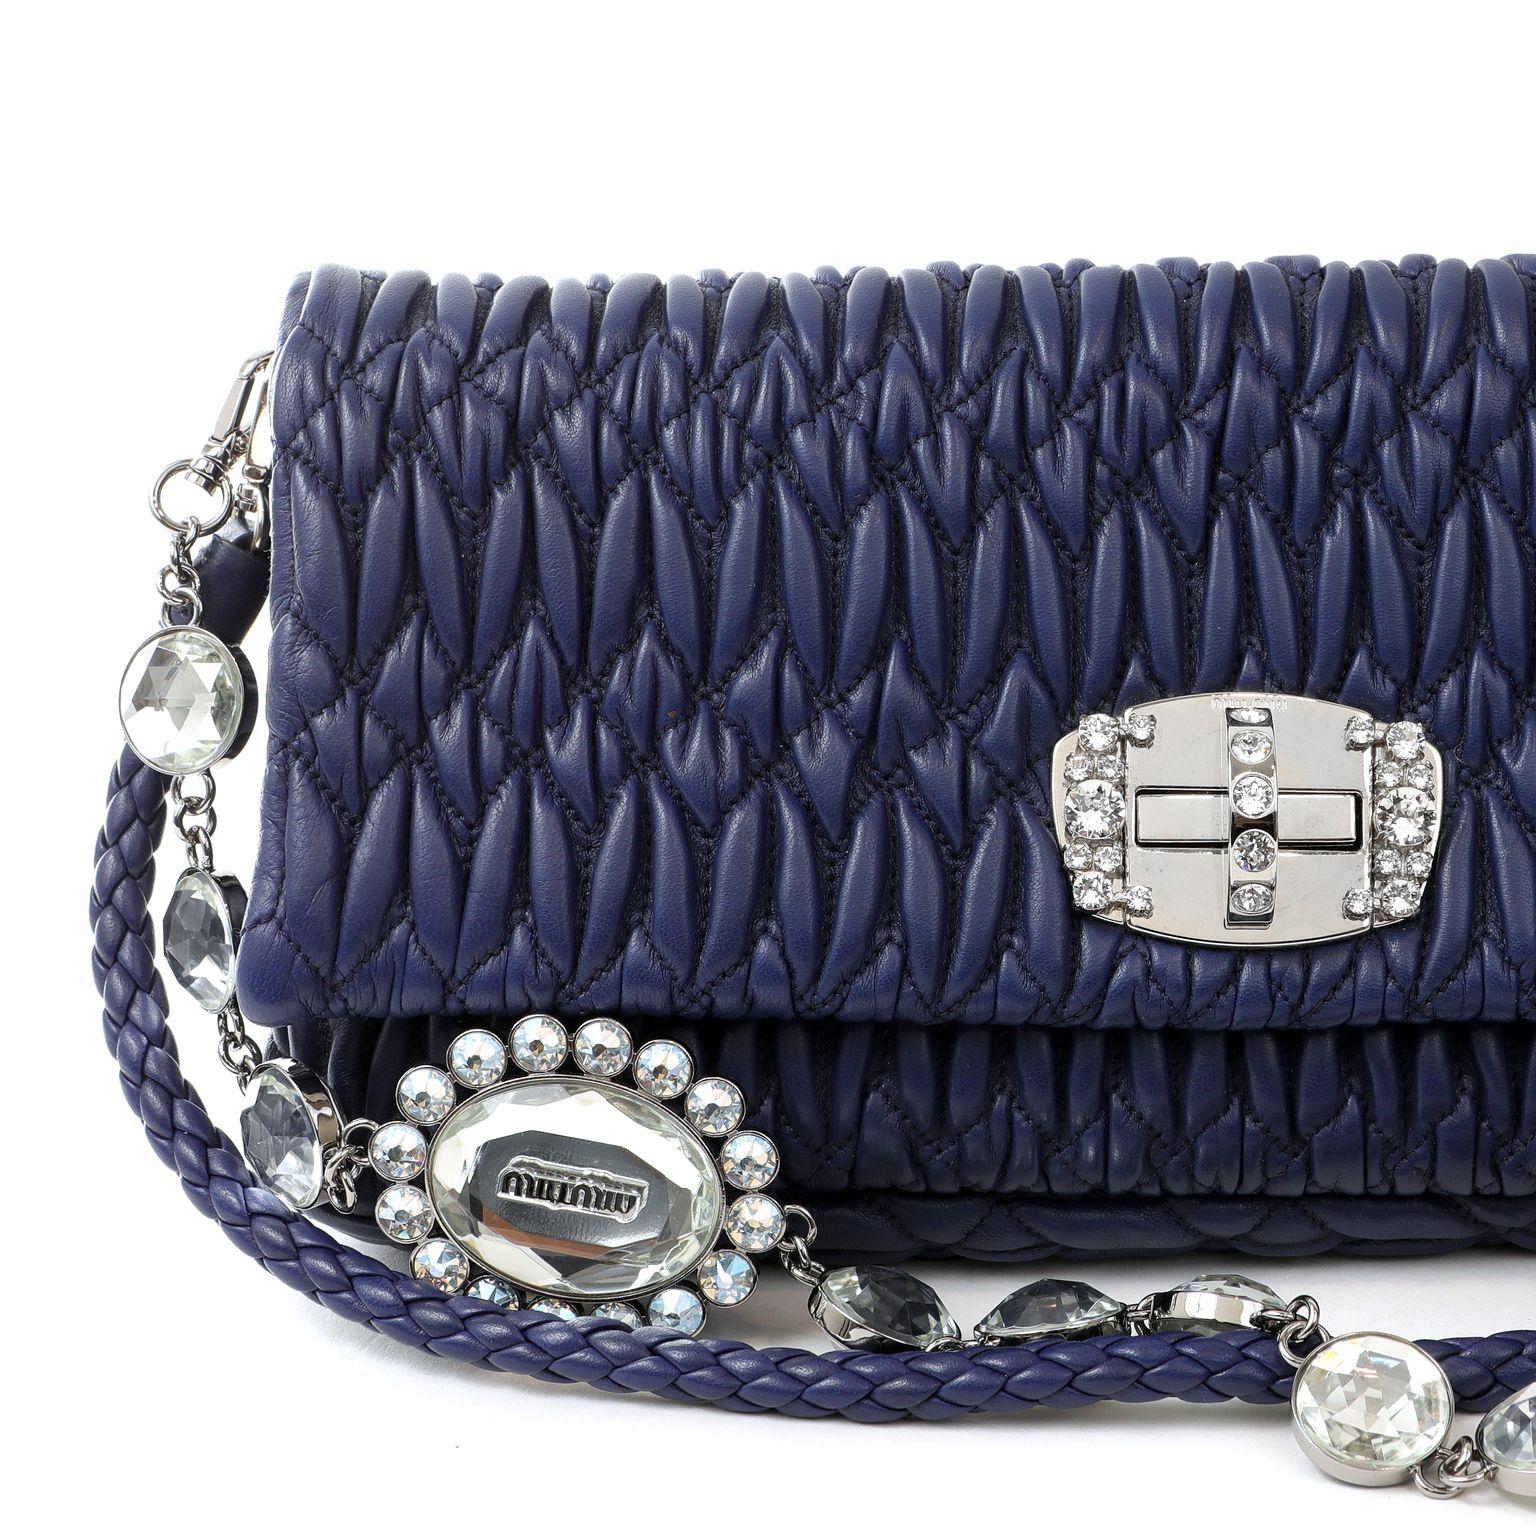 Diese authentische Miu Miu Royal Blue Crystal Cloquè Small Bag ist in tadellosem Zustand.  Das kultige Design zeichnet sich durch blaues, gestepptes Nappaleder und einen Kristall-Drehverschluss aus.  Kann mit dem abnehmbaren Lederband oder dem